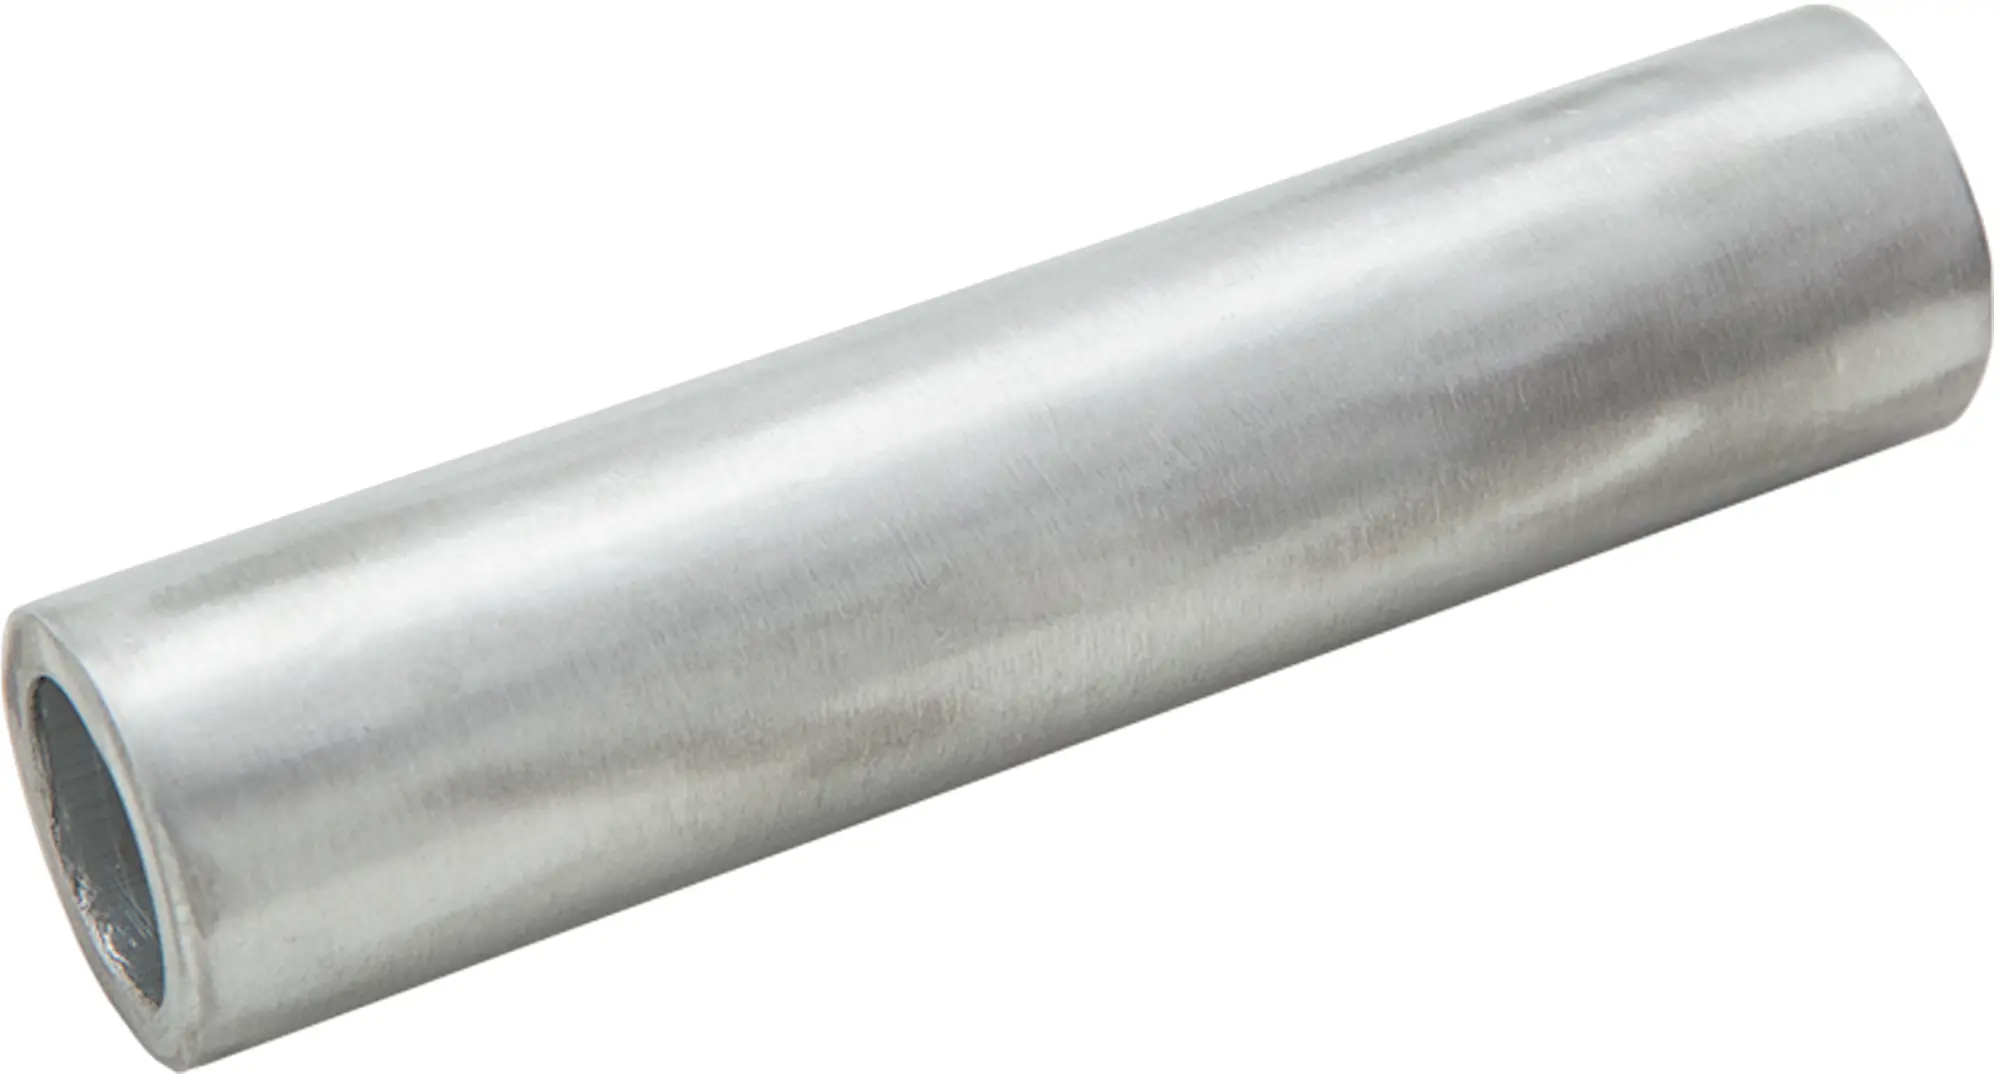 Гильза кабельная луженая Duwi ГМЛ 6-4 мм медь 10 шт. гильза кабельная луженая duwi гмл 6 4 мм медь 10 шт